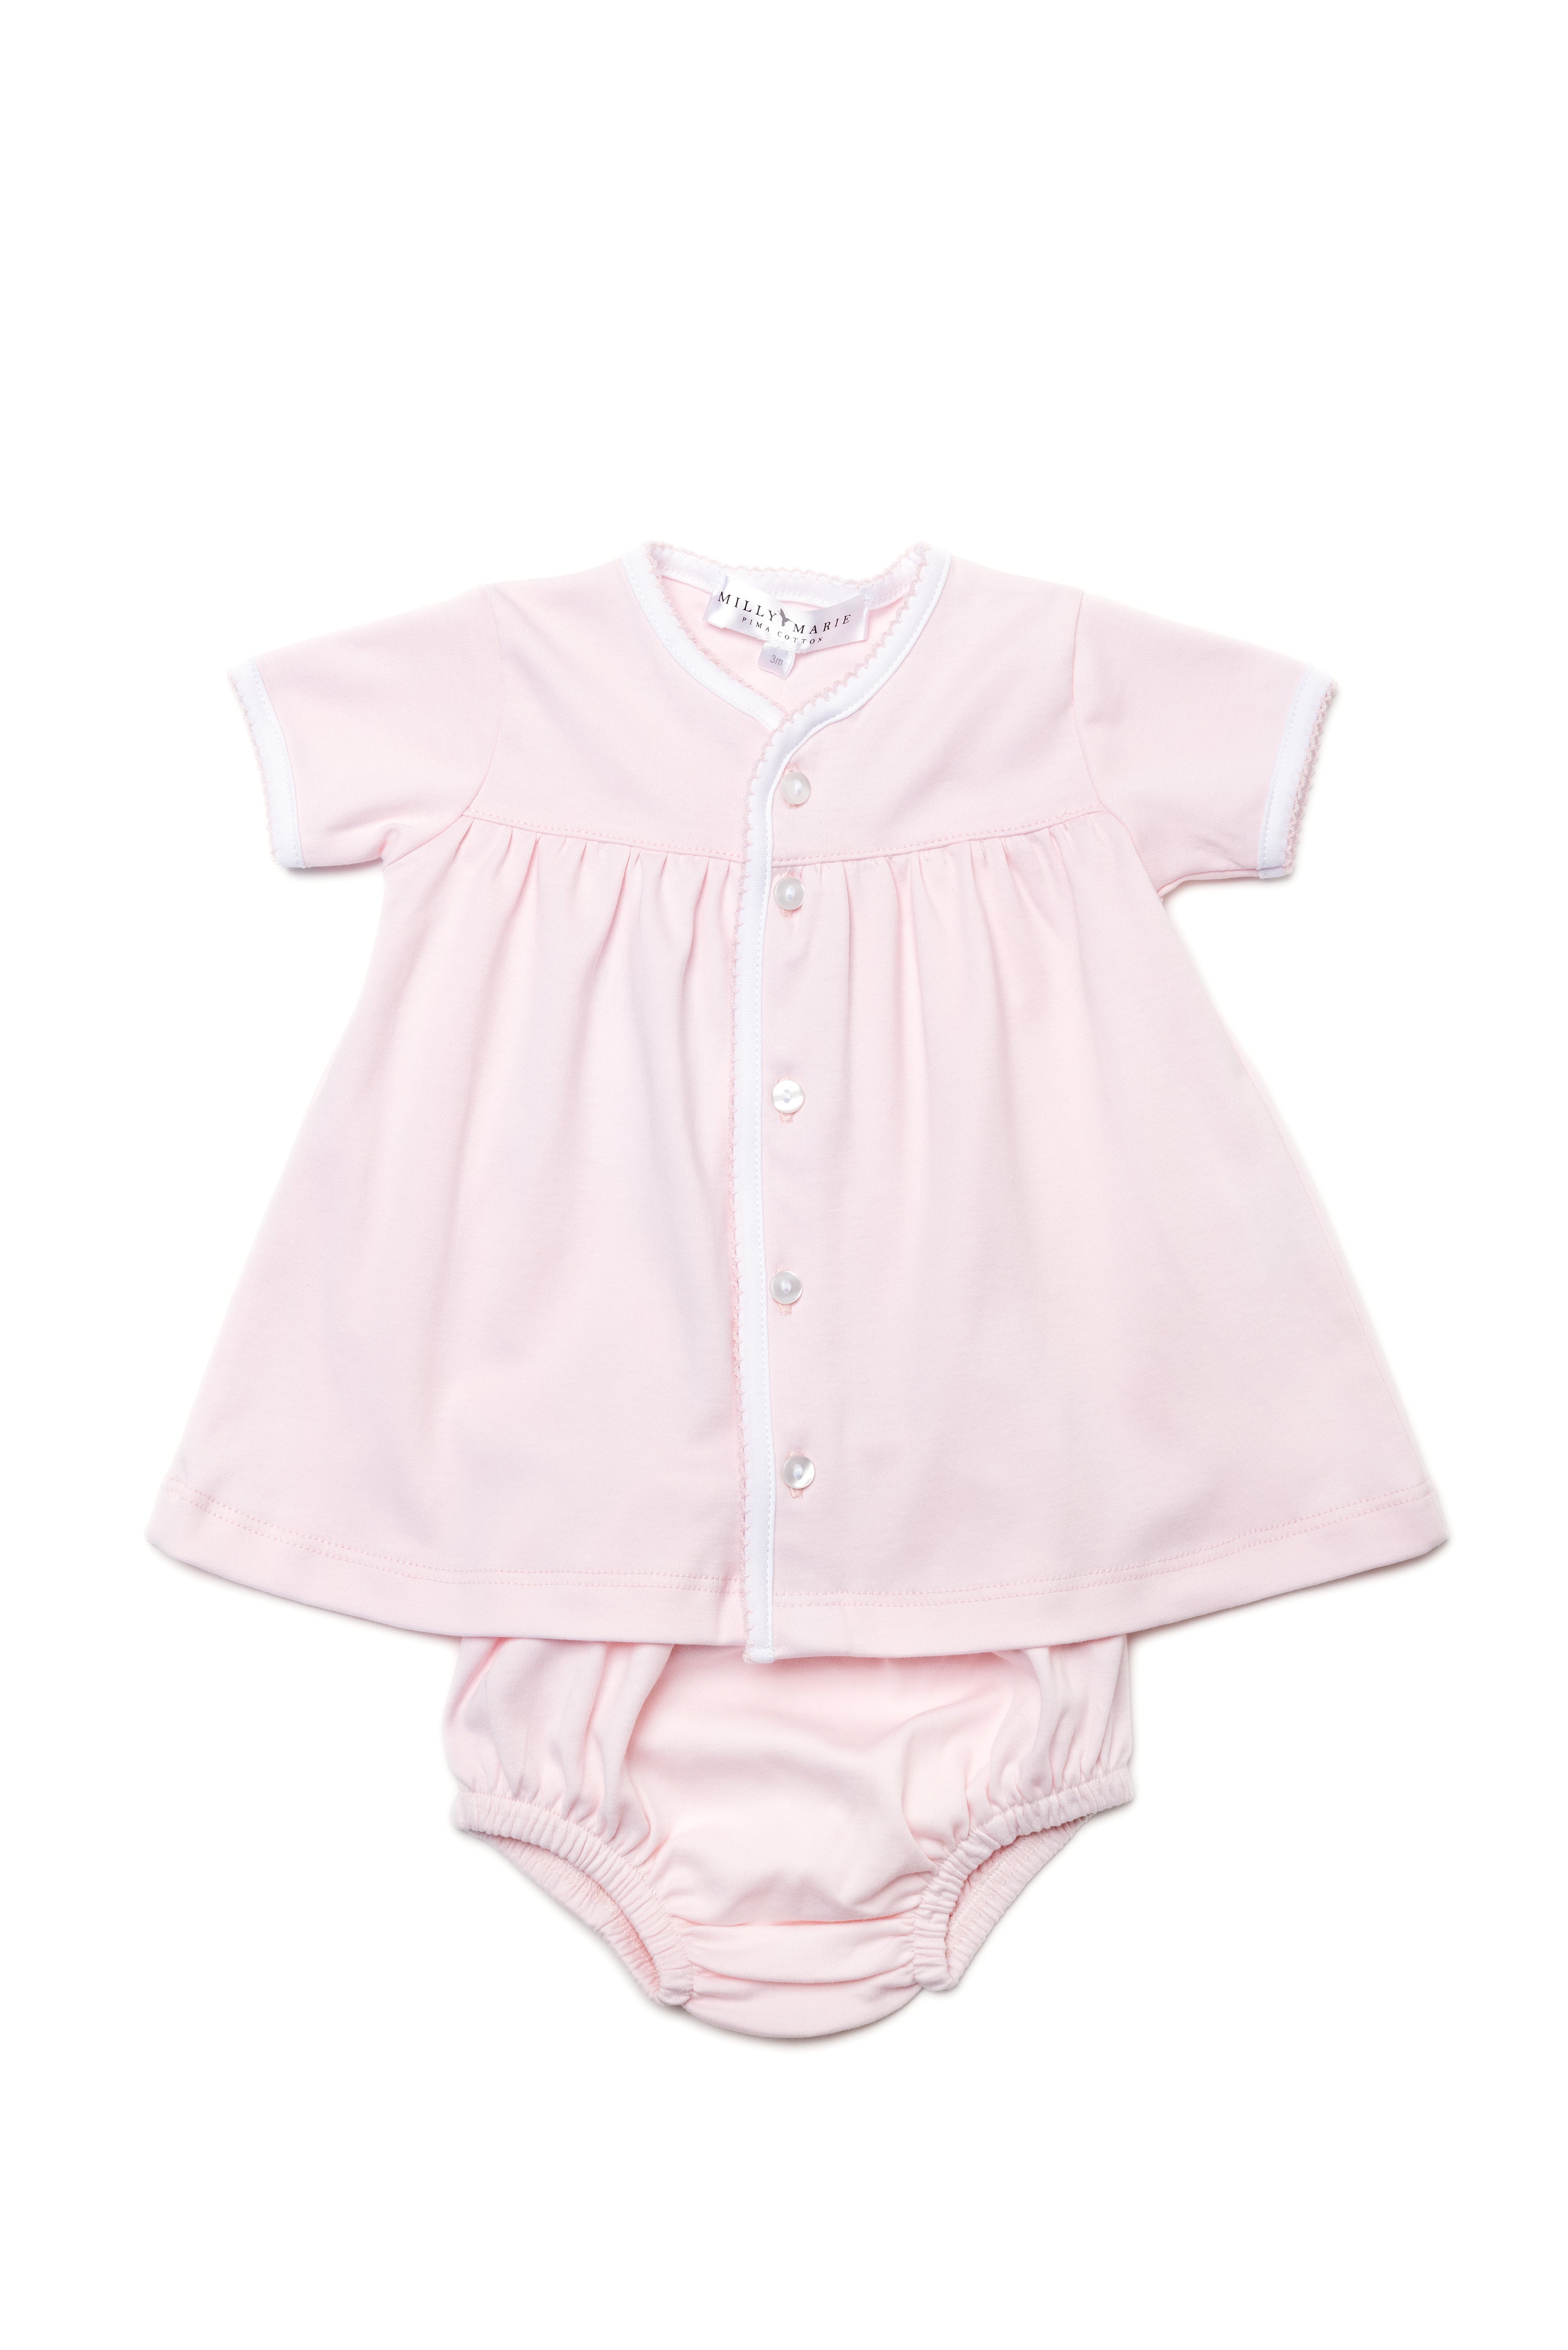 Girls Diaper Set-Pink/Pink & White (Baby)